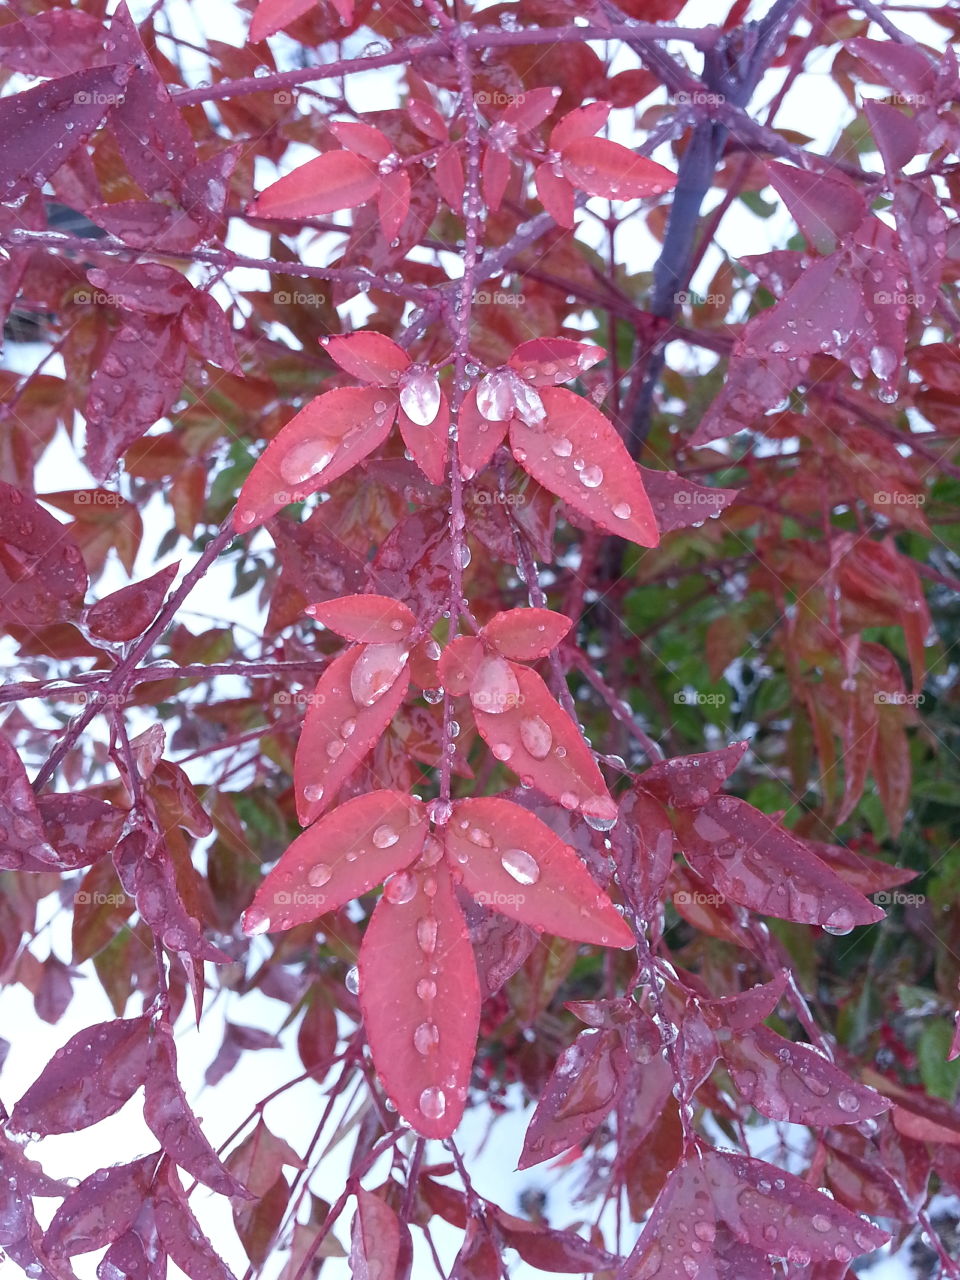 Rain drops on red leaves. Rain drops on red leaves